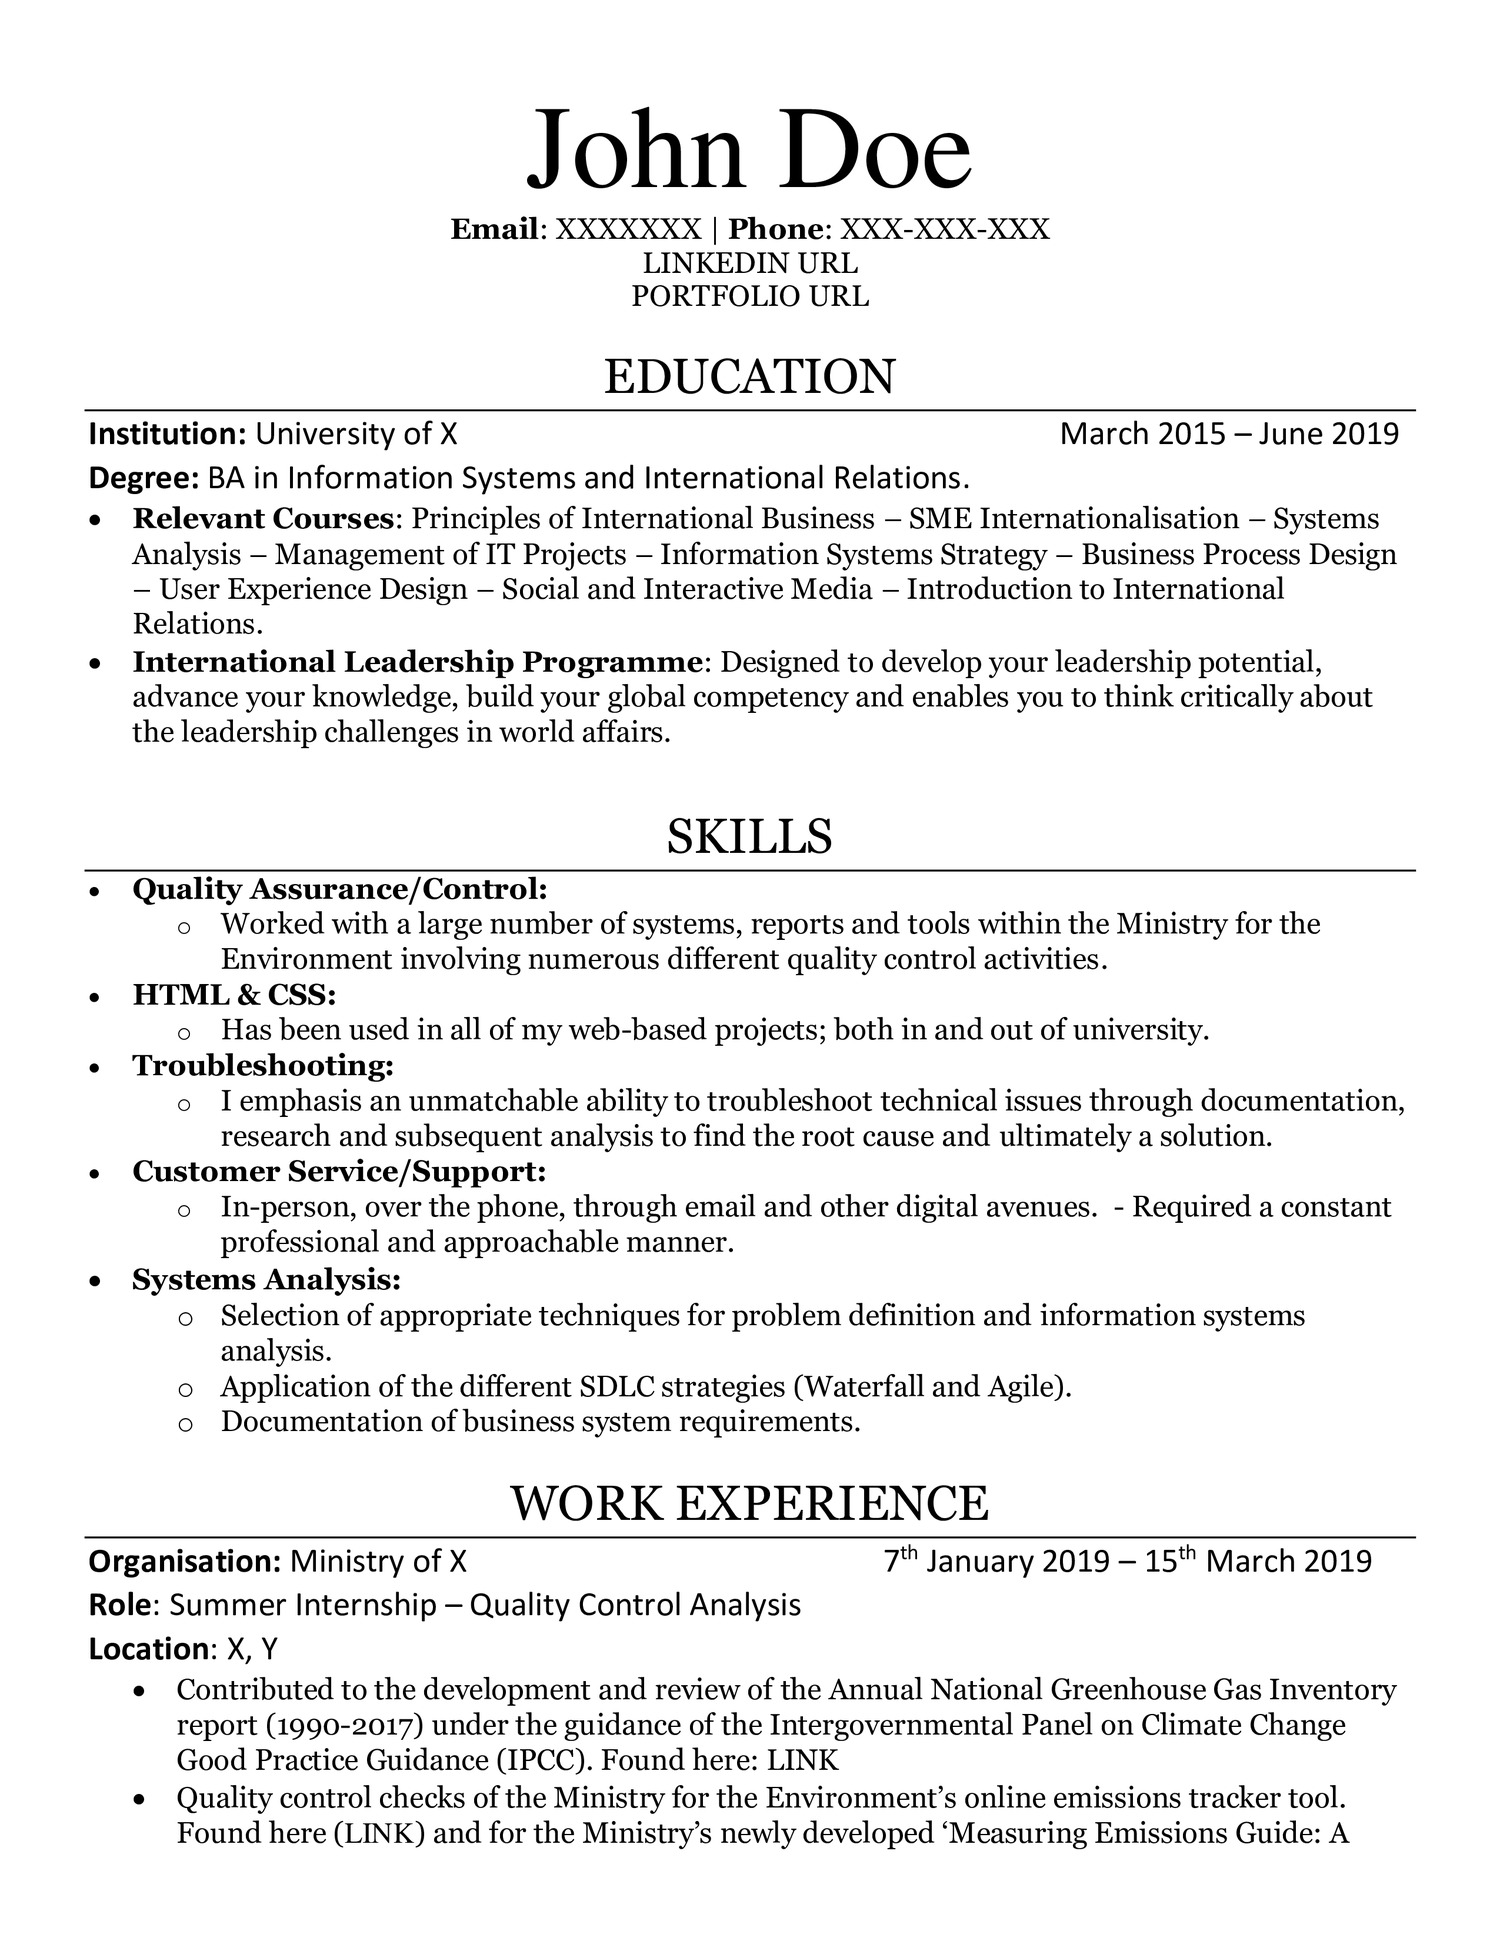 need help building a resume reddit